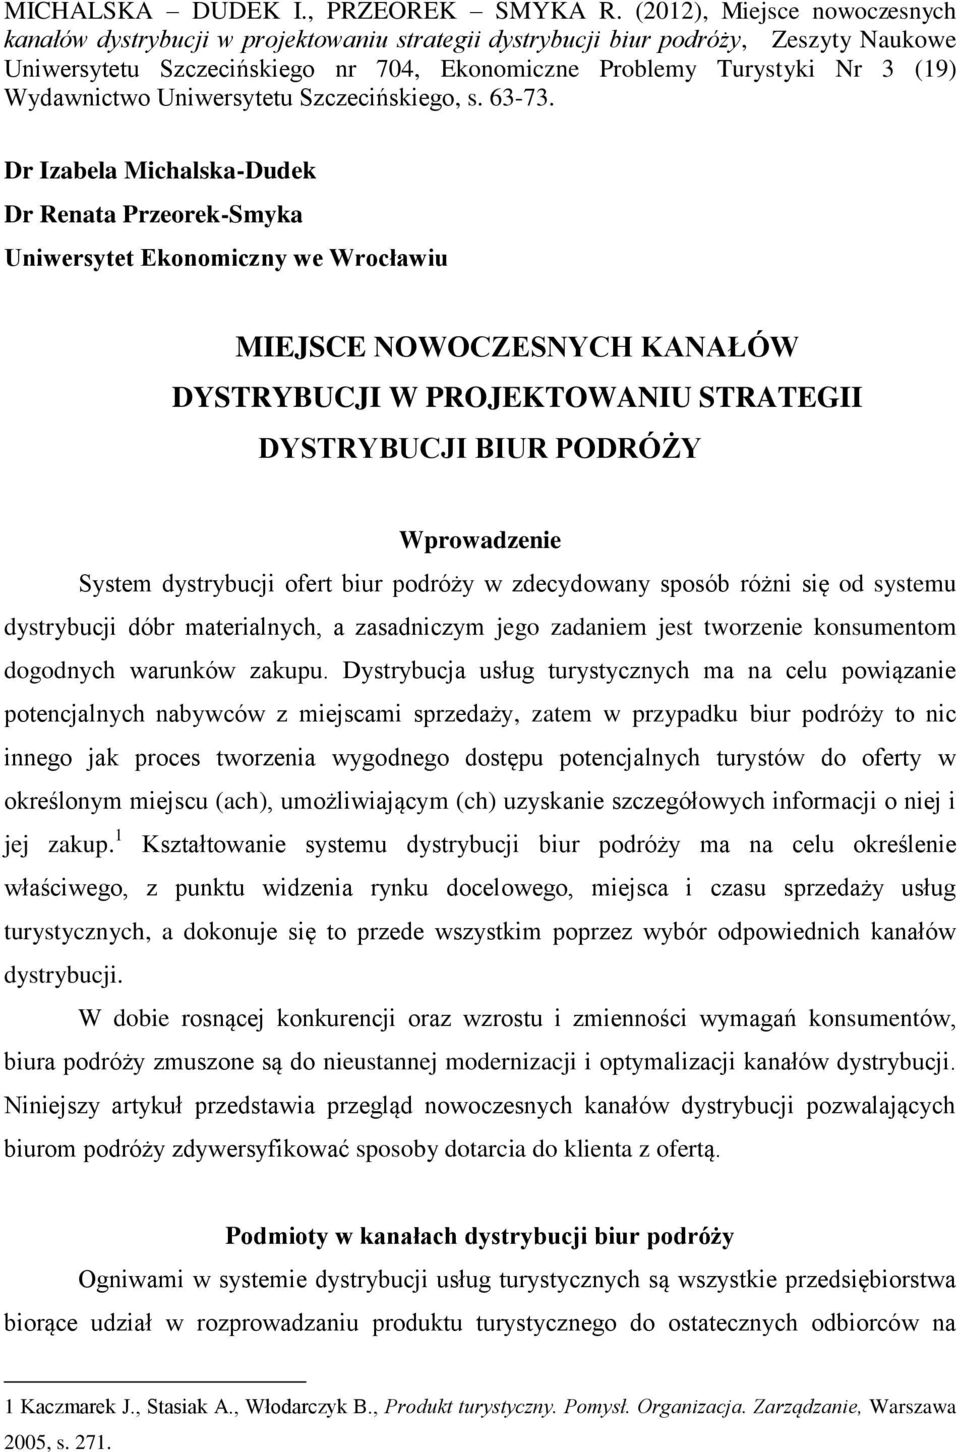 Wydawnictwo Uniwersytetu Szczecińskiego, s. 63-73.